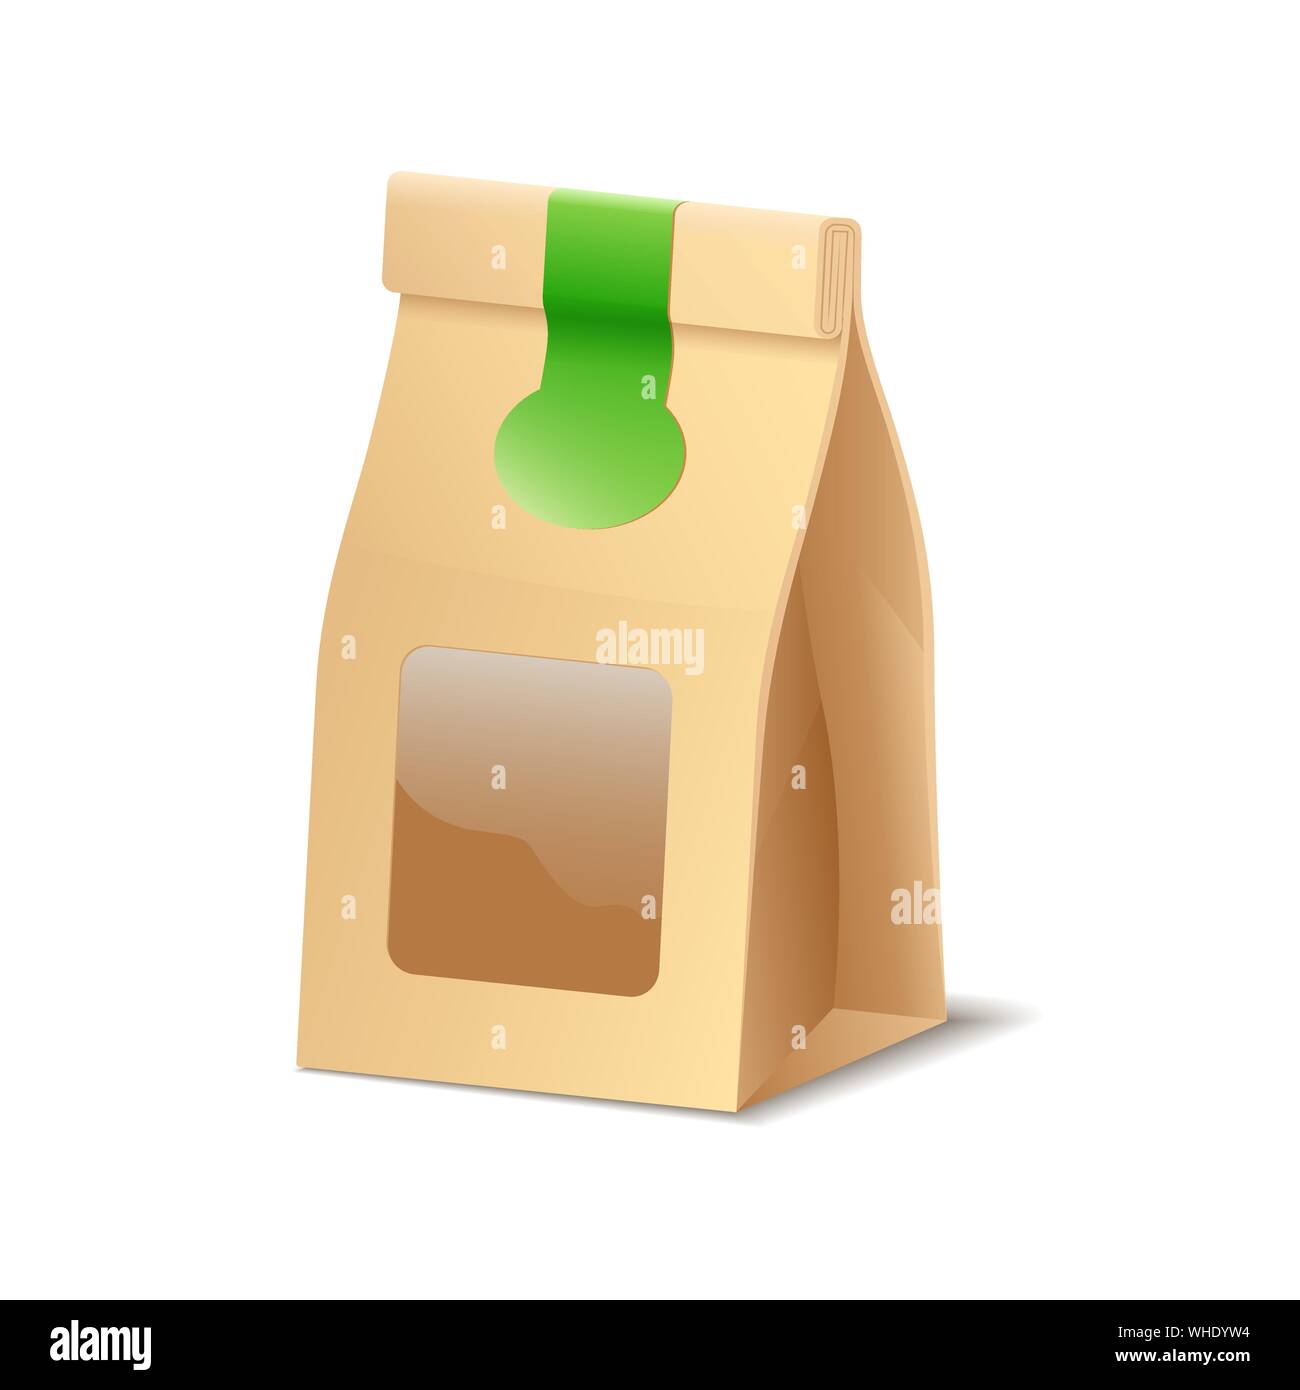 Emballage papier eco shopper Sac pour produits alimentaires, cosmétiques ou autres icône vecteur d'achat Illustration de Vecteur